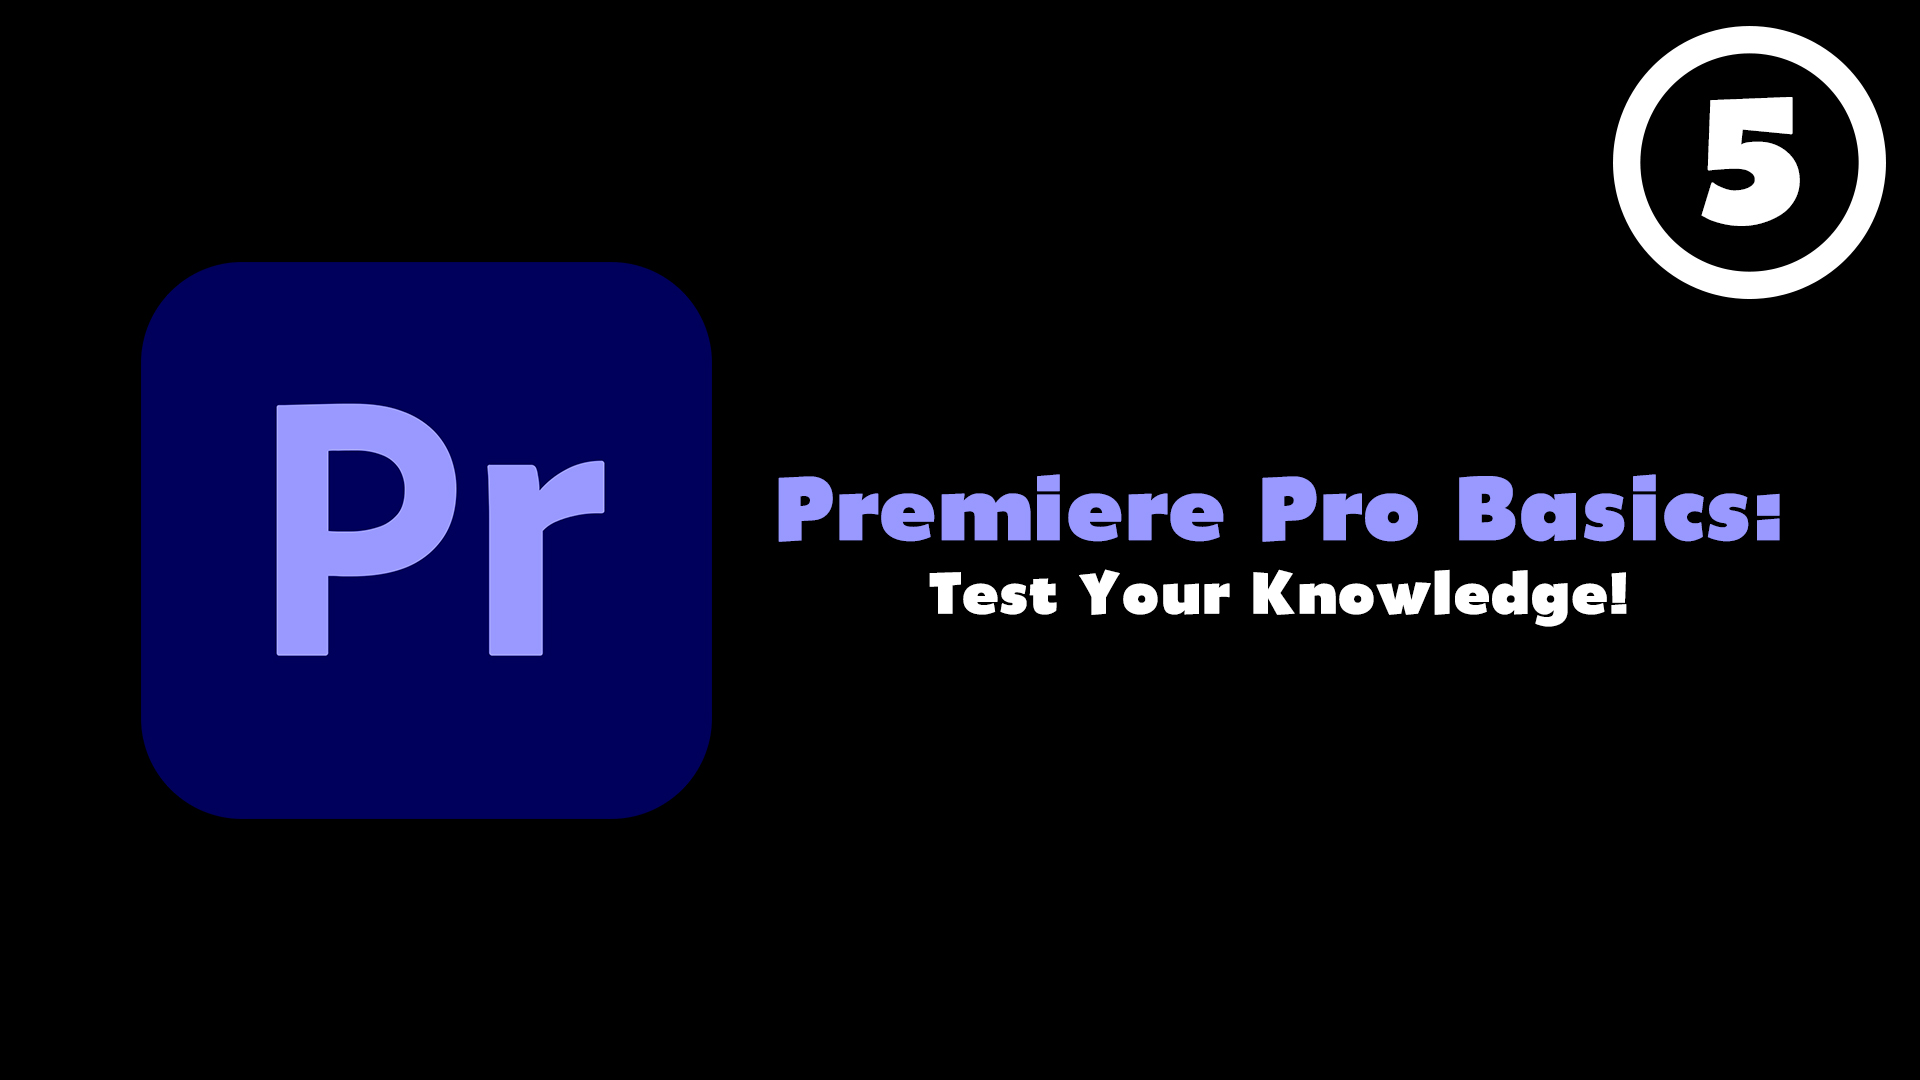 Premiere Pro Basics Course (Episode 5) - Test Your Knowledge!